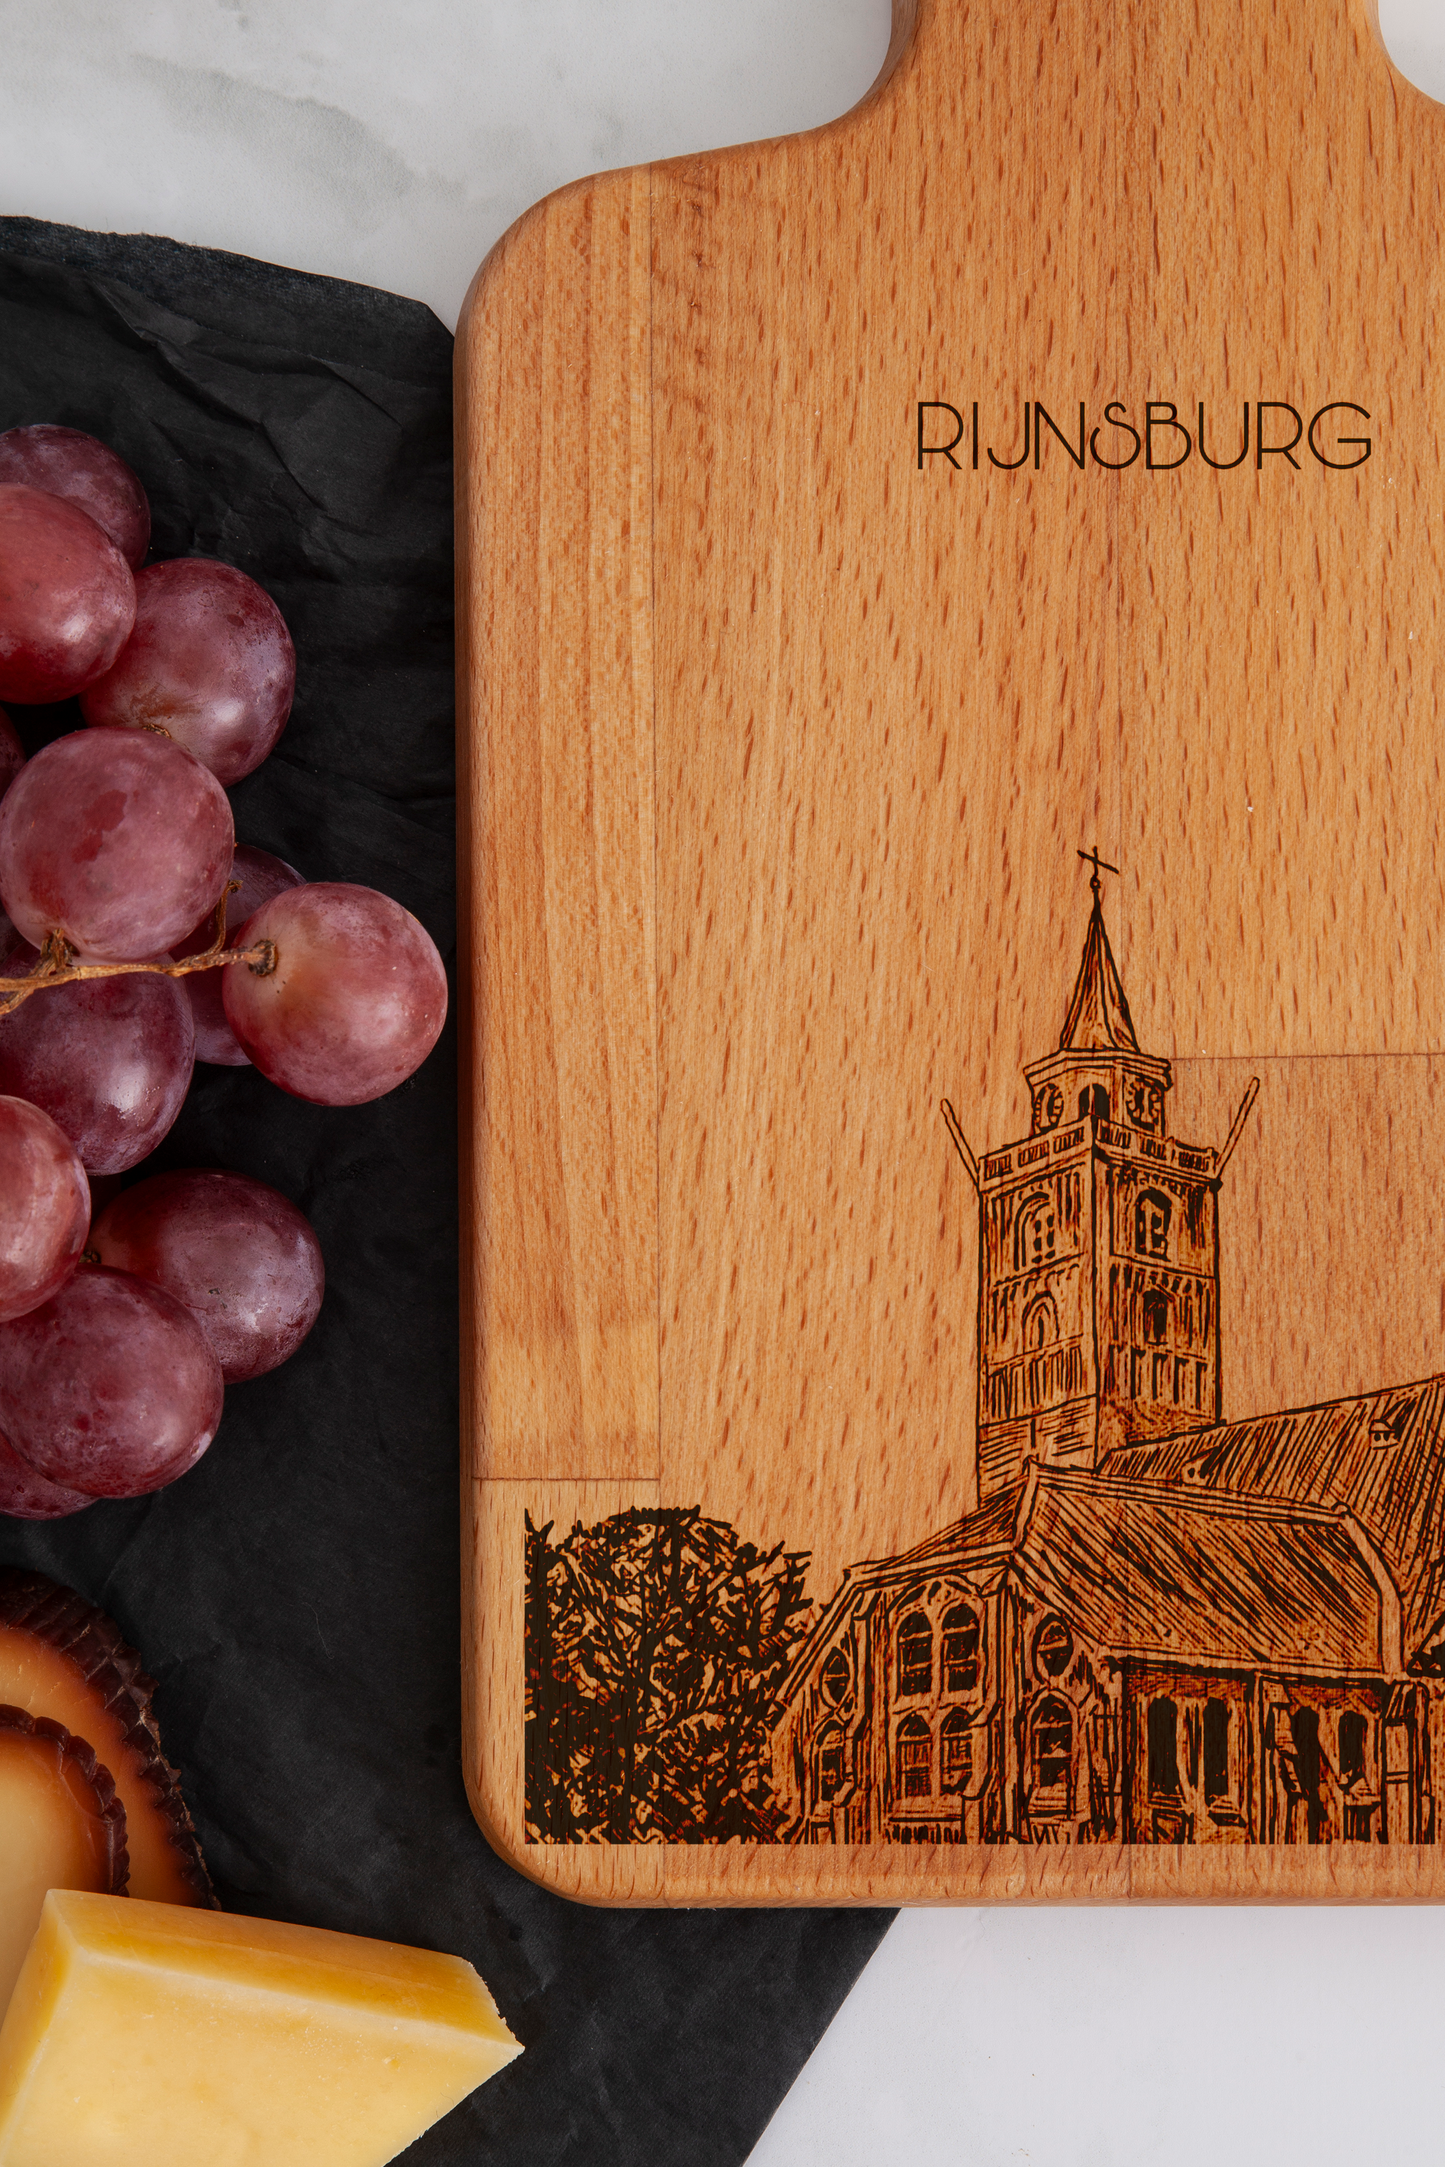 Rijnsburg, Grote Kerk, cheese board, close-up